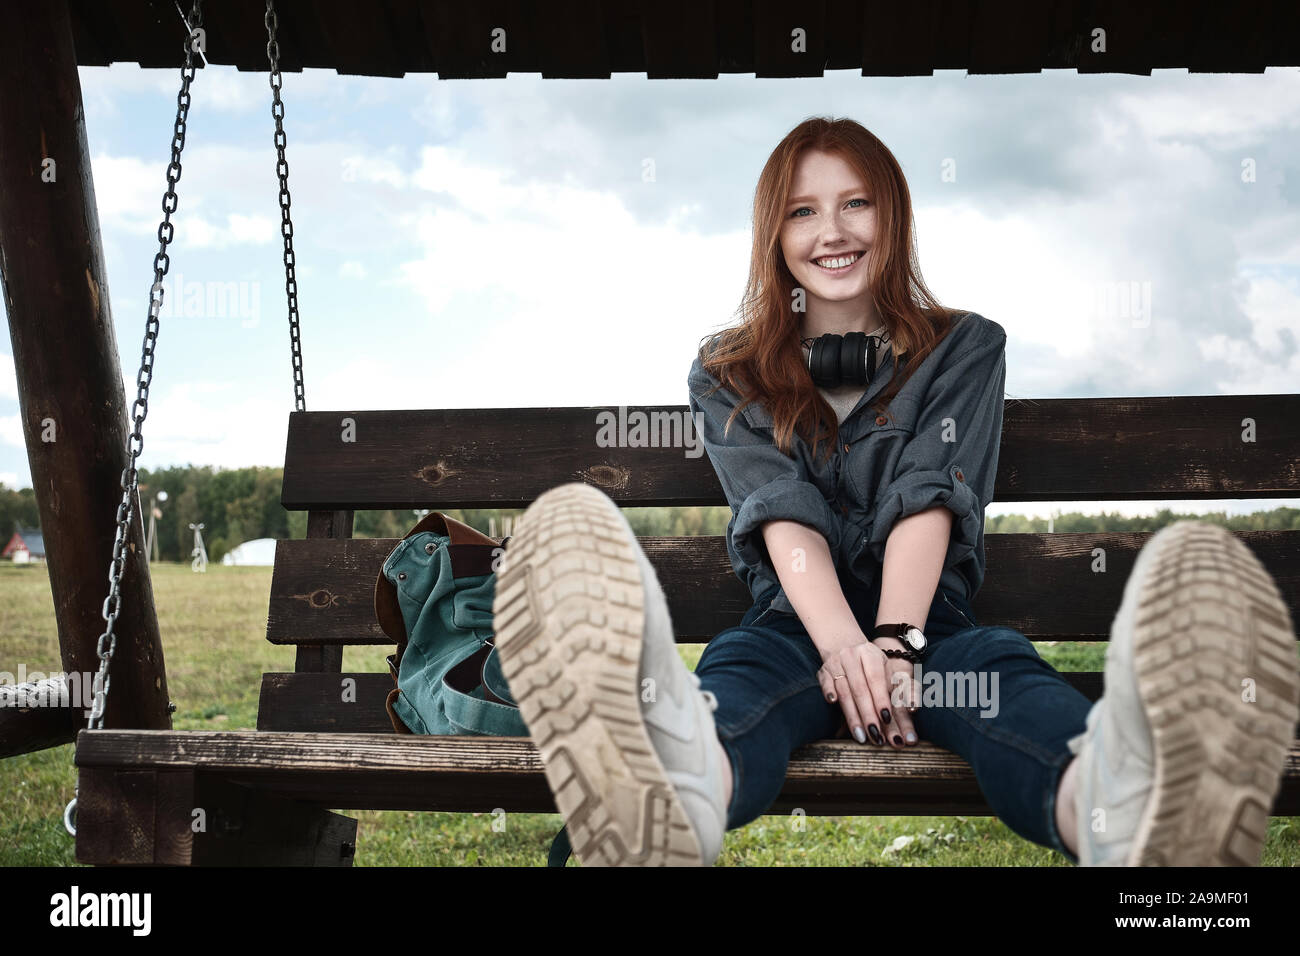 Jeune fille rousse dans une chemise en jean est assis avec un sac à dos sur une balançoire en bois banc, ondule, jambes, sourit largement dans le cadre. Banque D'Images